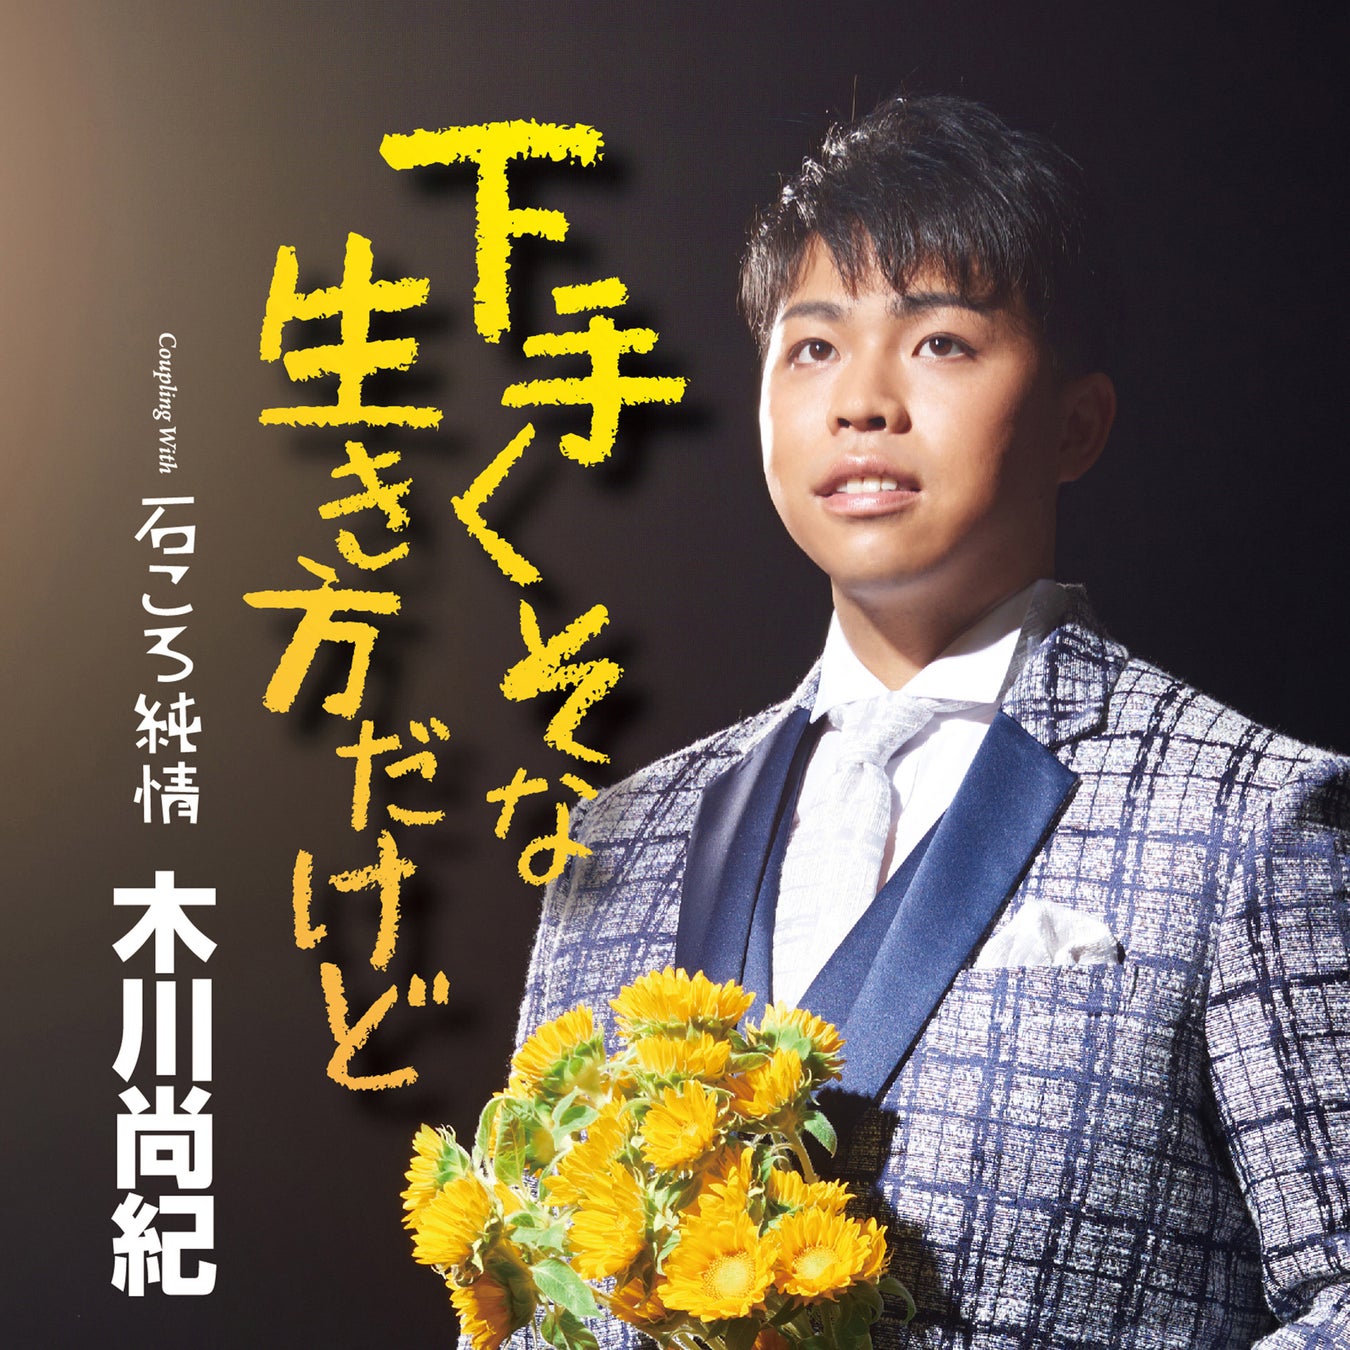 デビュー後にコロナ禍となった演歌歌手・木川尚紀が3年ぶりの新曲「下手くそな生き方だけど」発売のサブ画像2